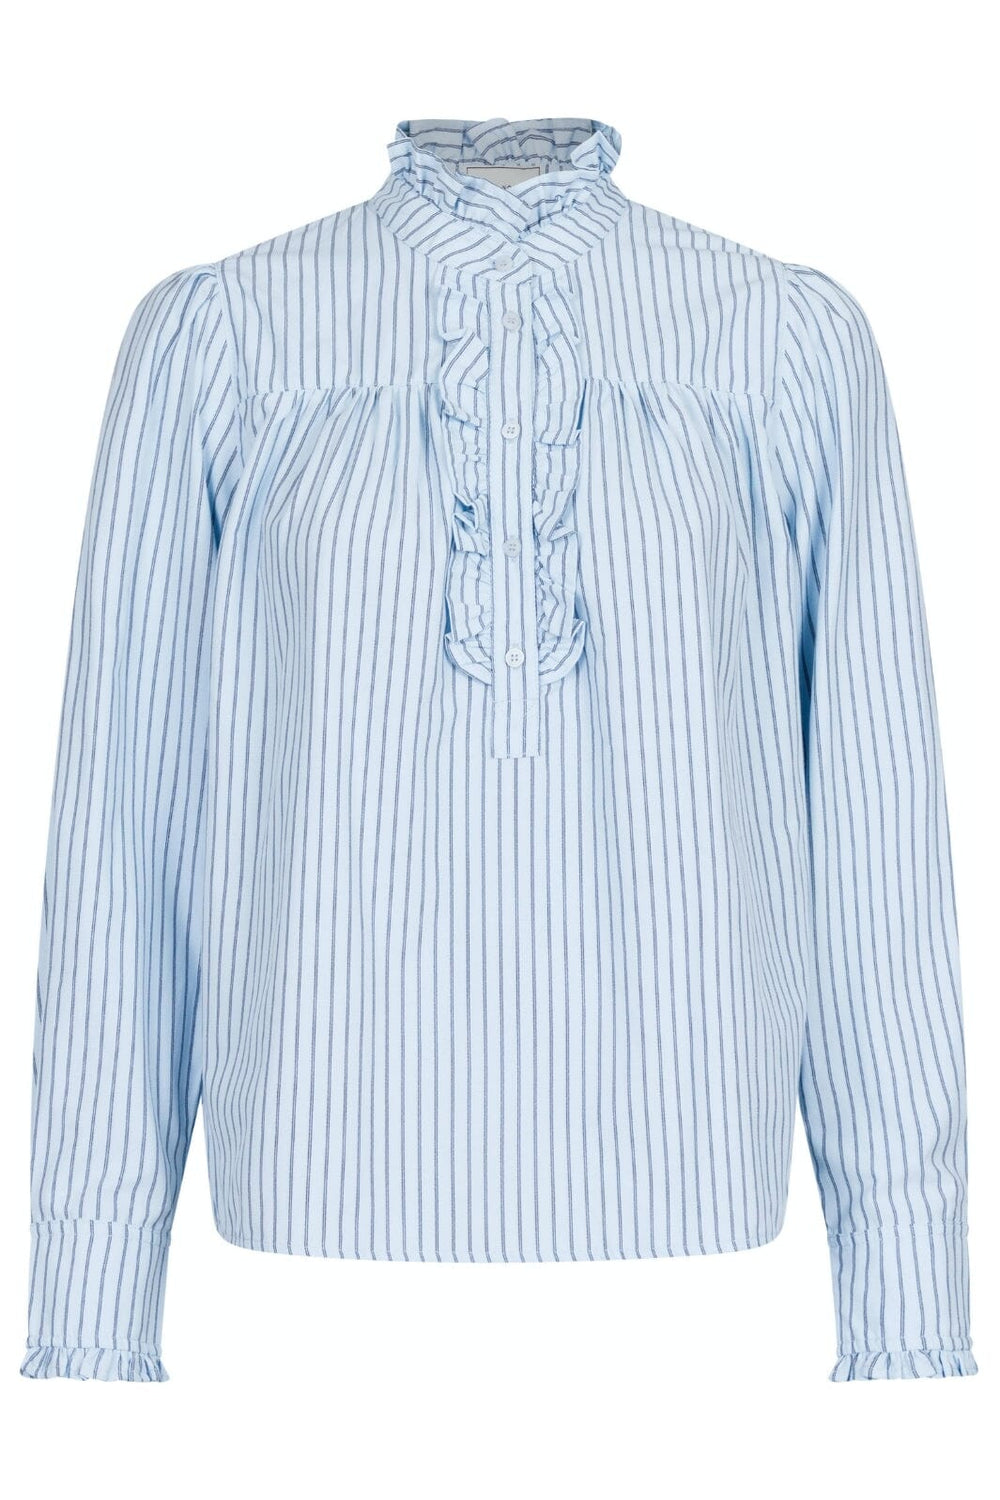 Neo Noir - Justine Stripe Shirt - Light Blue Skjorter 